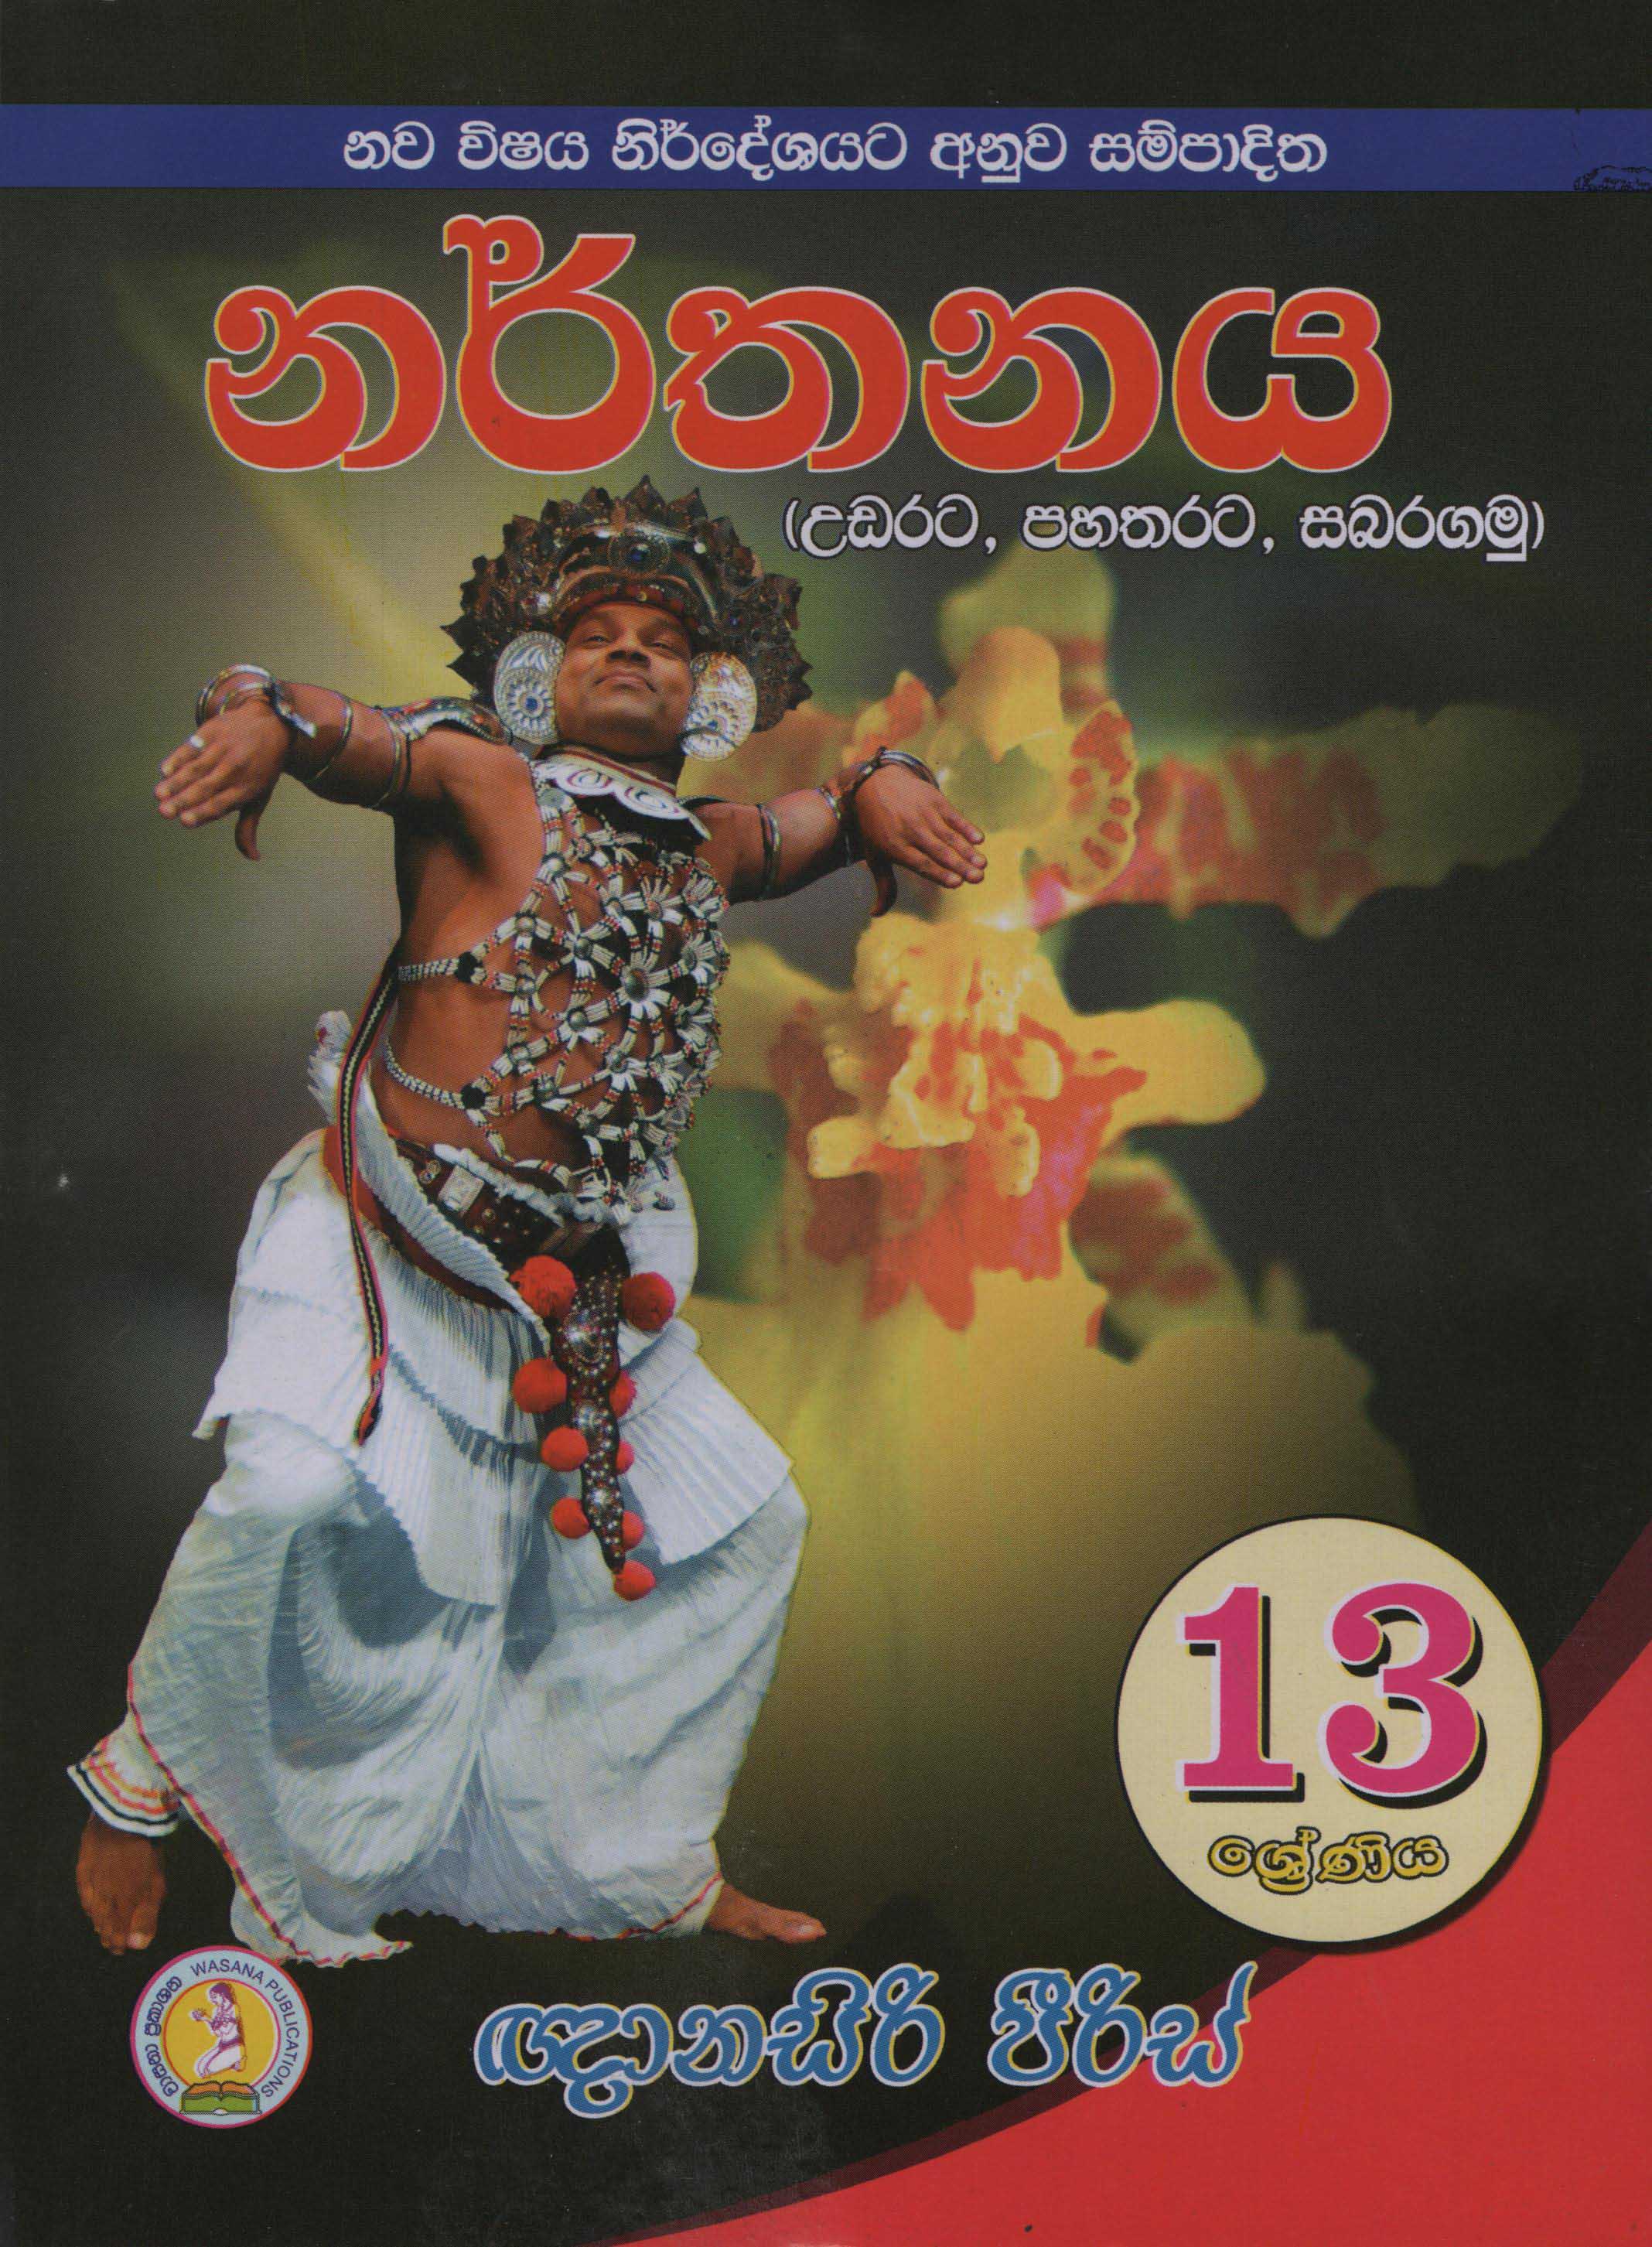 Nawa Vishaya Nirdheshayata Anuwa Sampaditha Narthanaya 13 Shreniya (Udarata, Pahatharata, Sabaragamu)